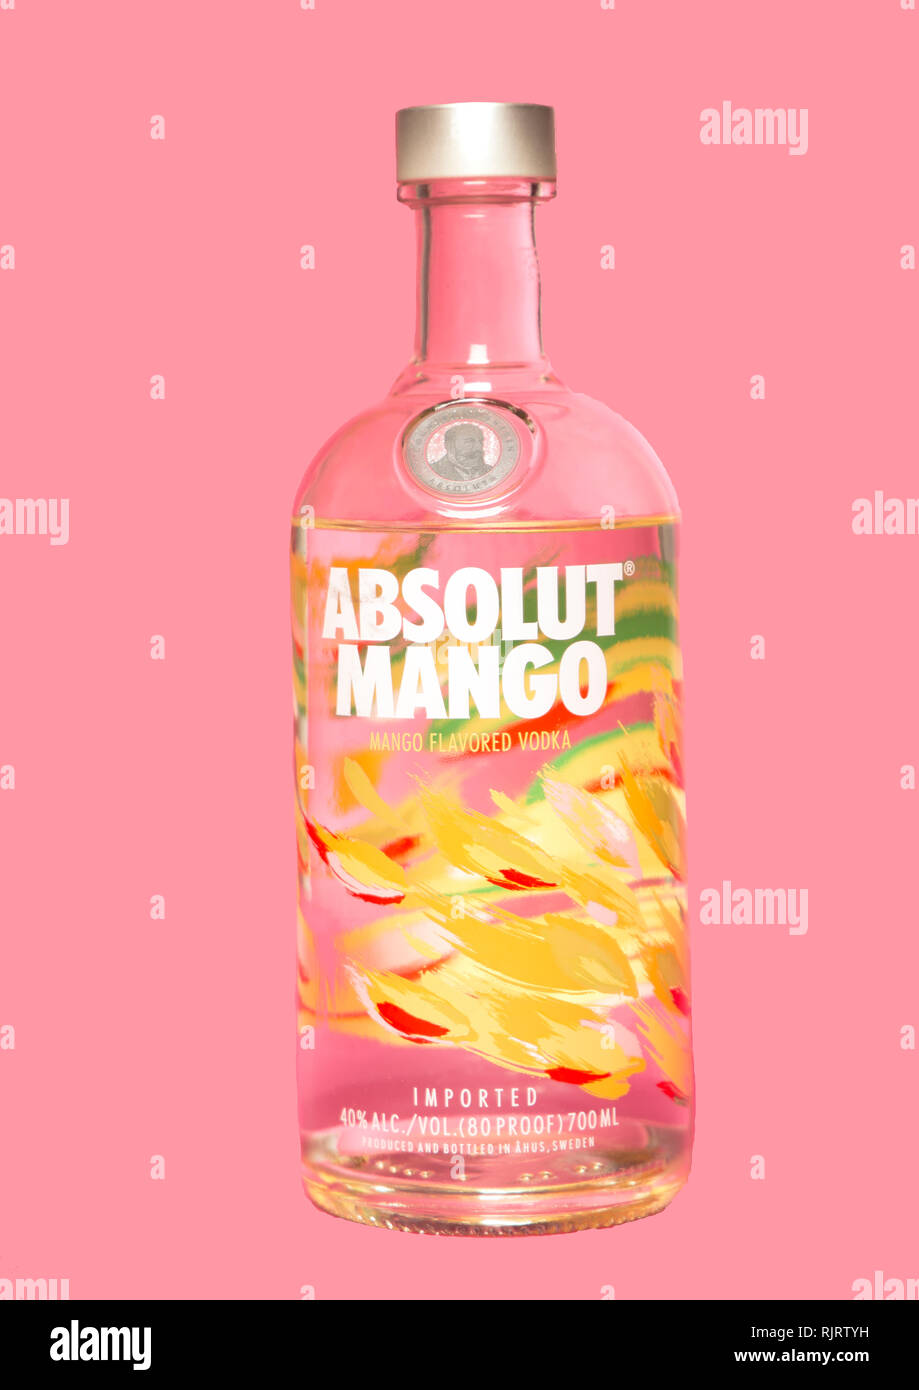 Absolut Mango Vodka - Studio Product image Stock Photo